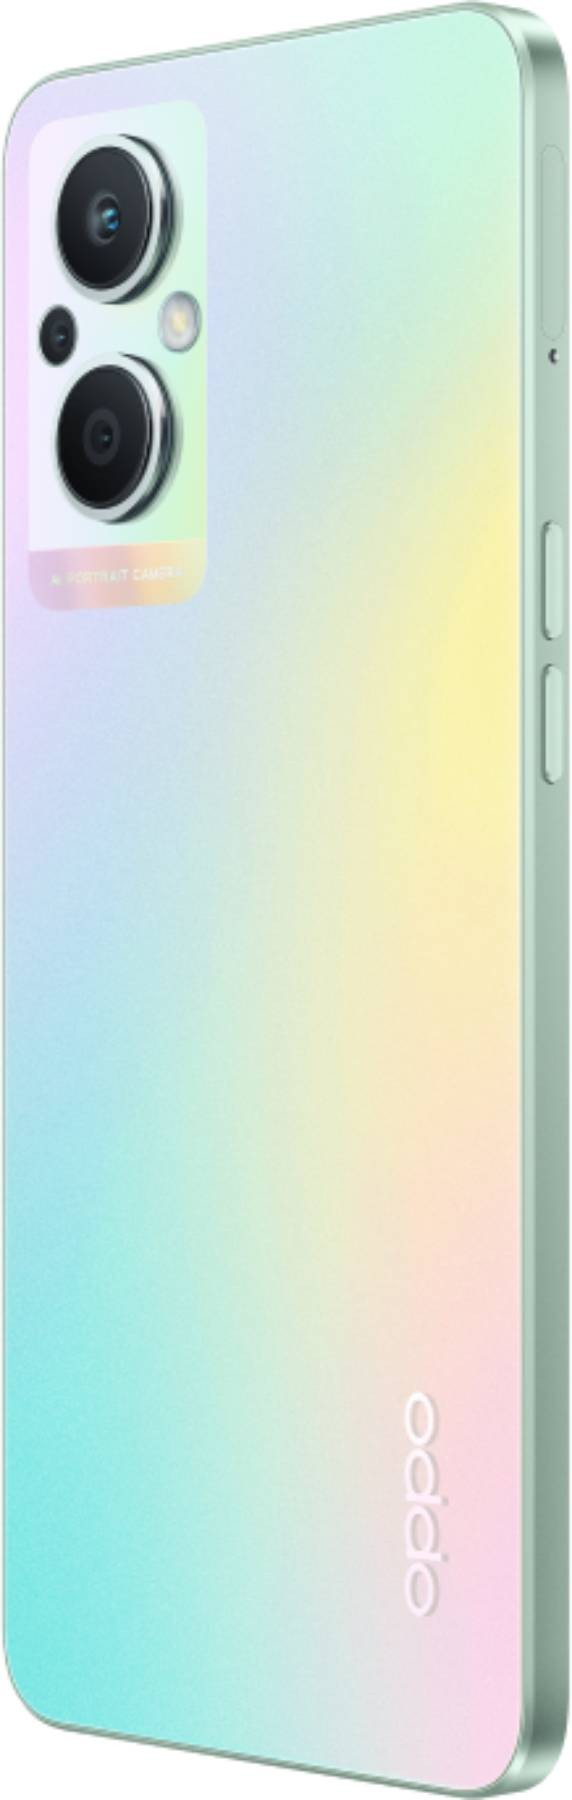 OPPO Smartphone Reno 8 Lite 128 Go Rainbow Spectrum